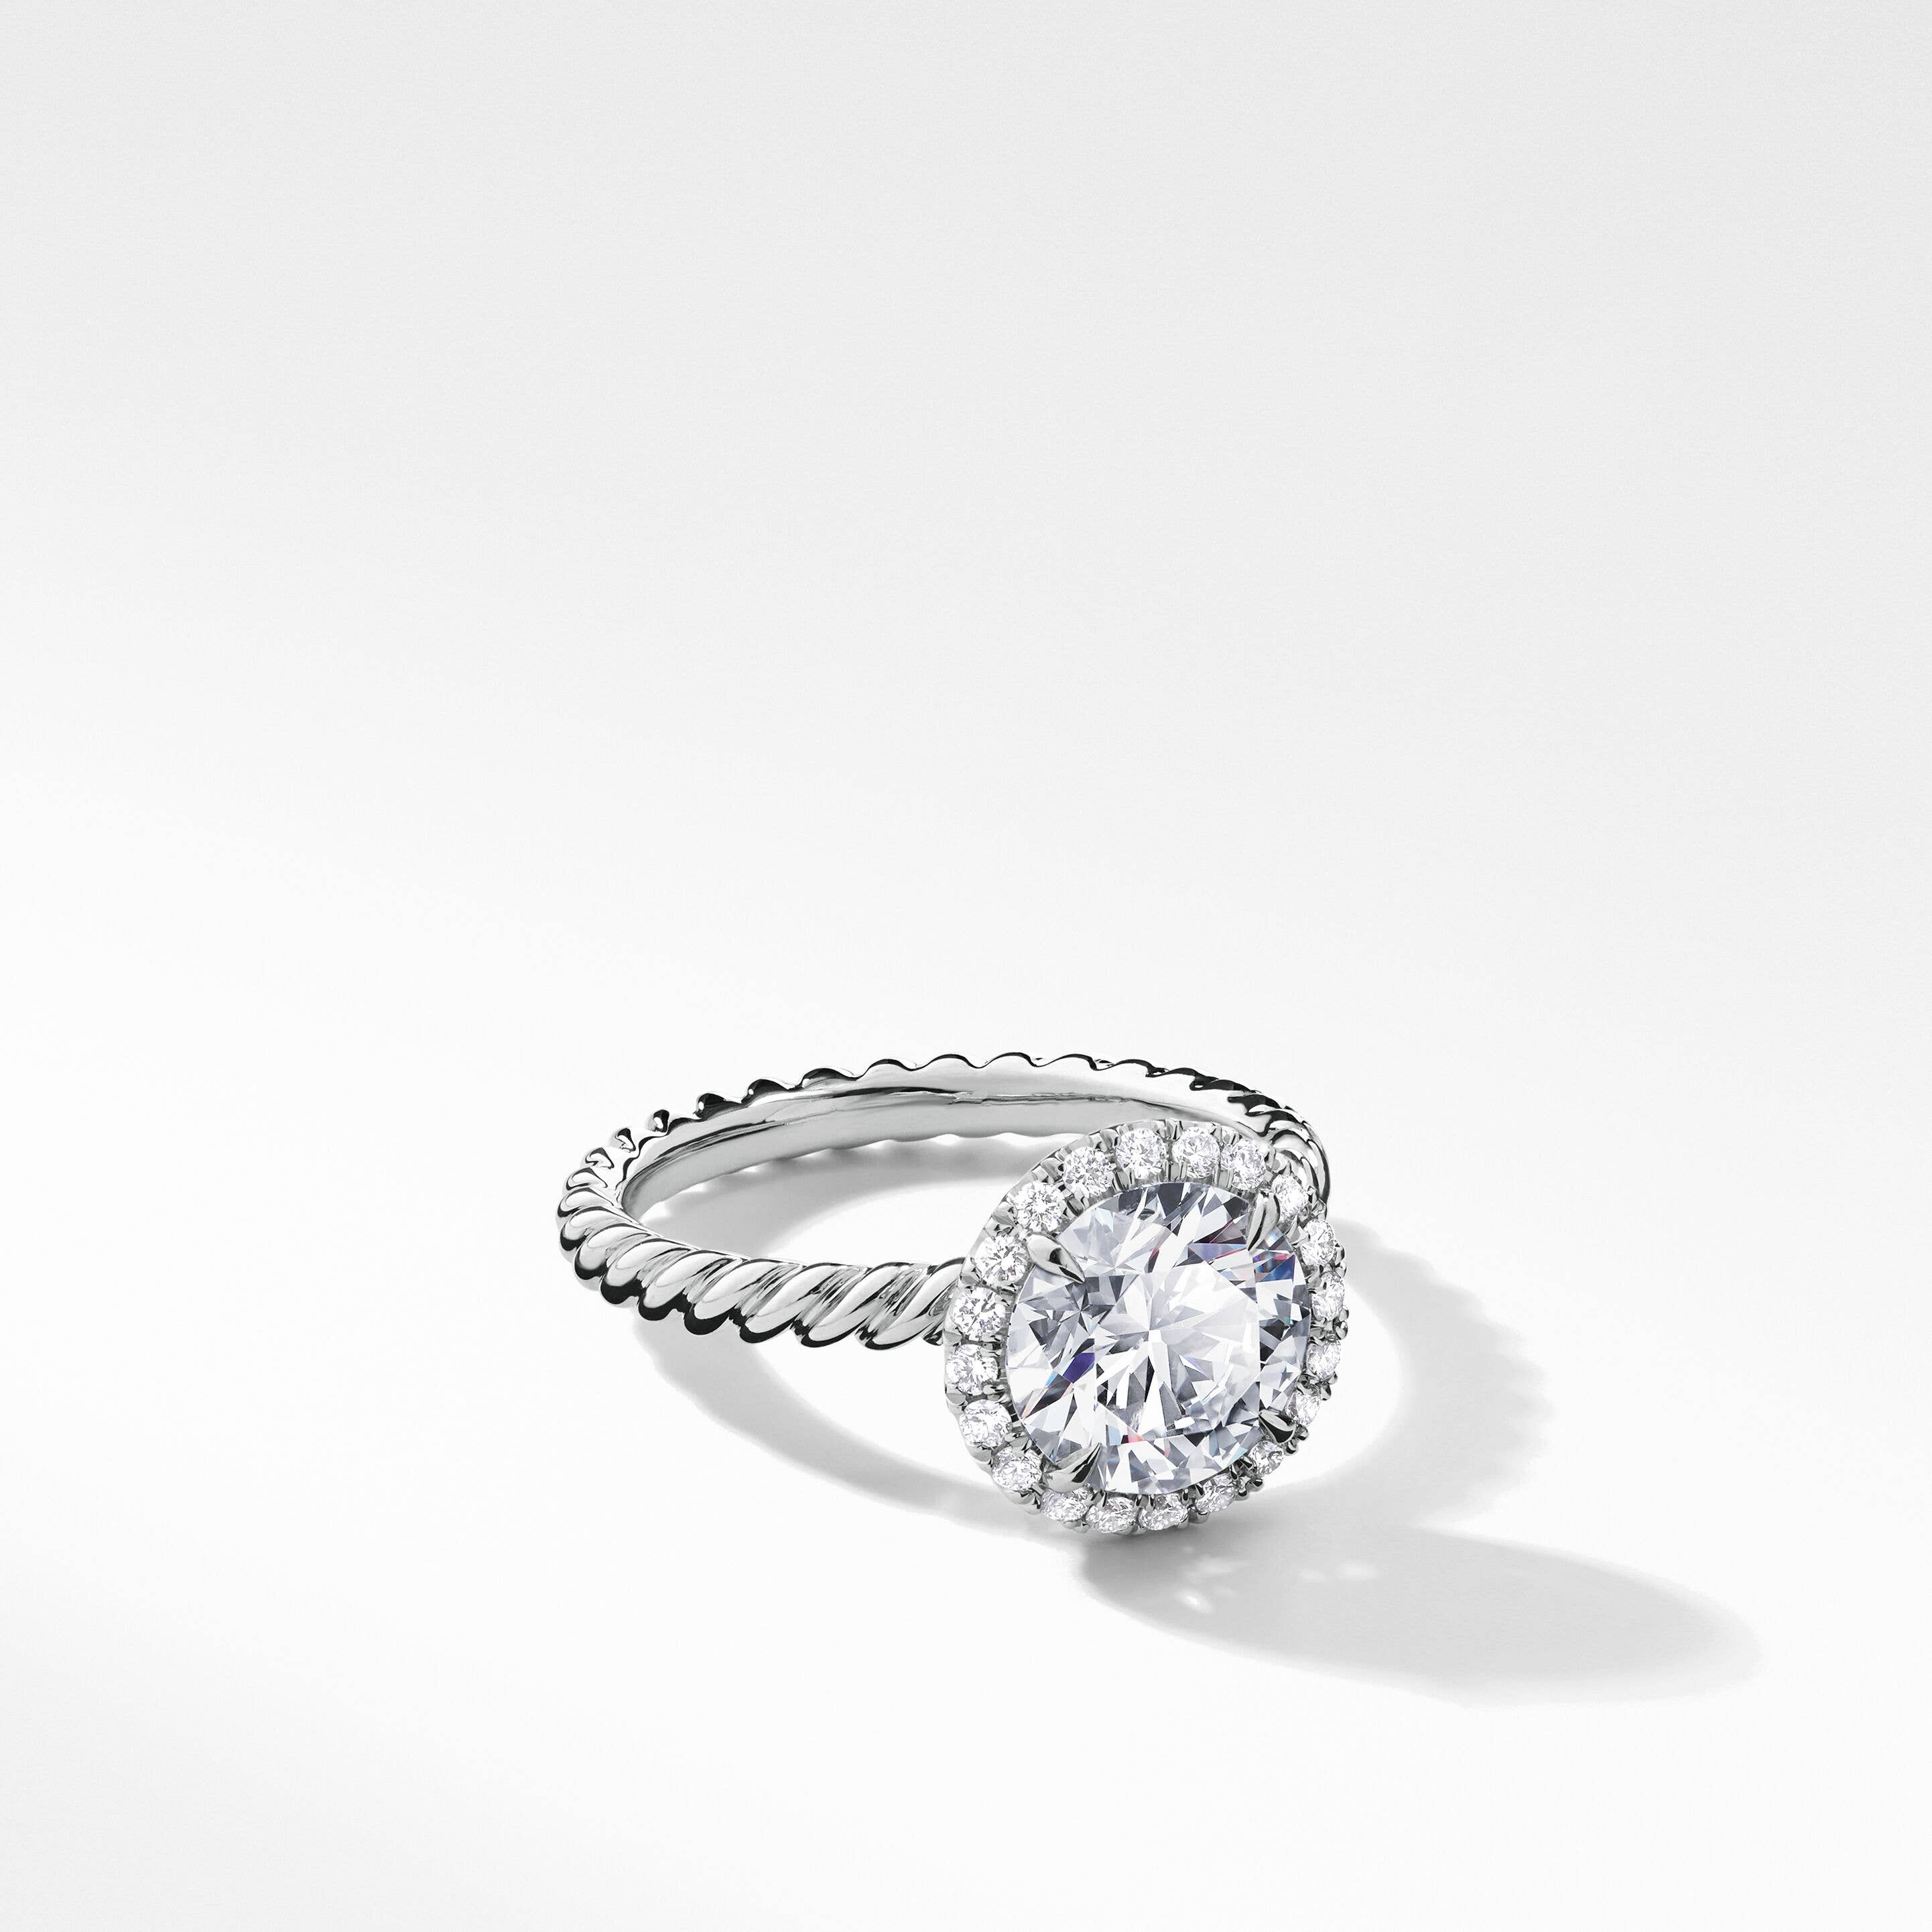 DY Capri® Engagement Ring in Platinum, Round